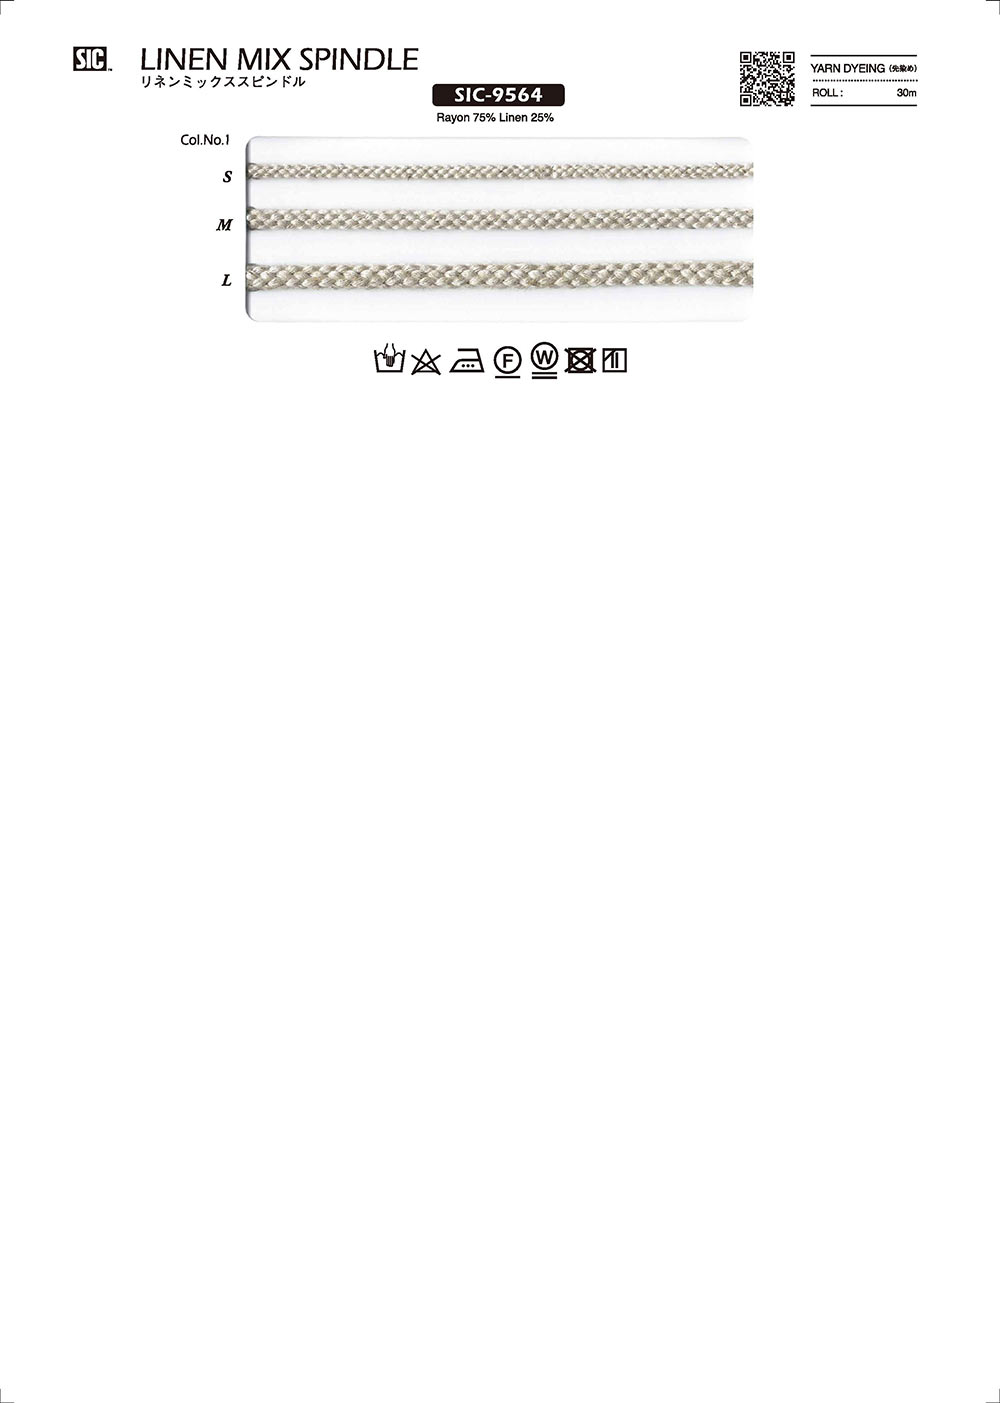 SIC-9564 Tròn Vải Lanh[Dây Băng Ruy Băng] SHINDO(SIC)